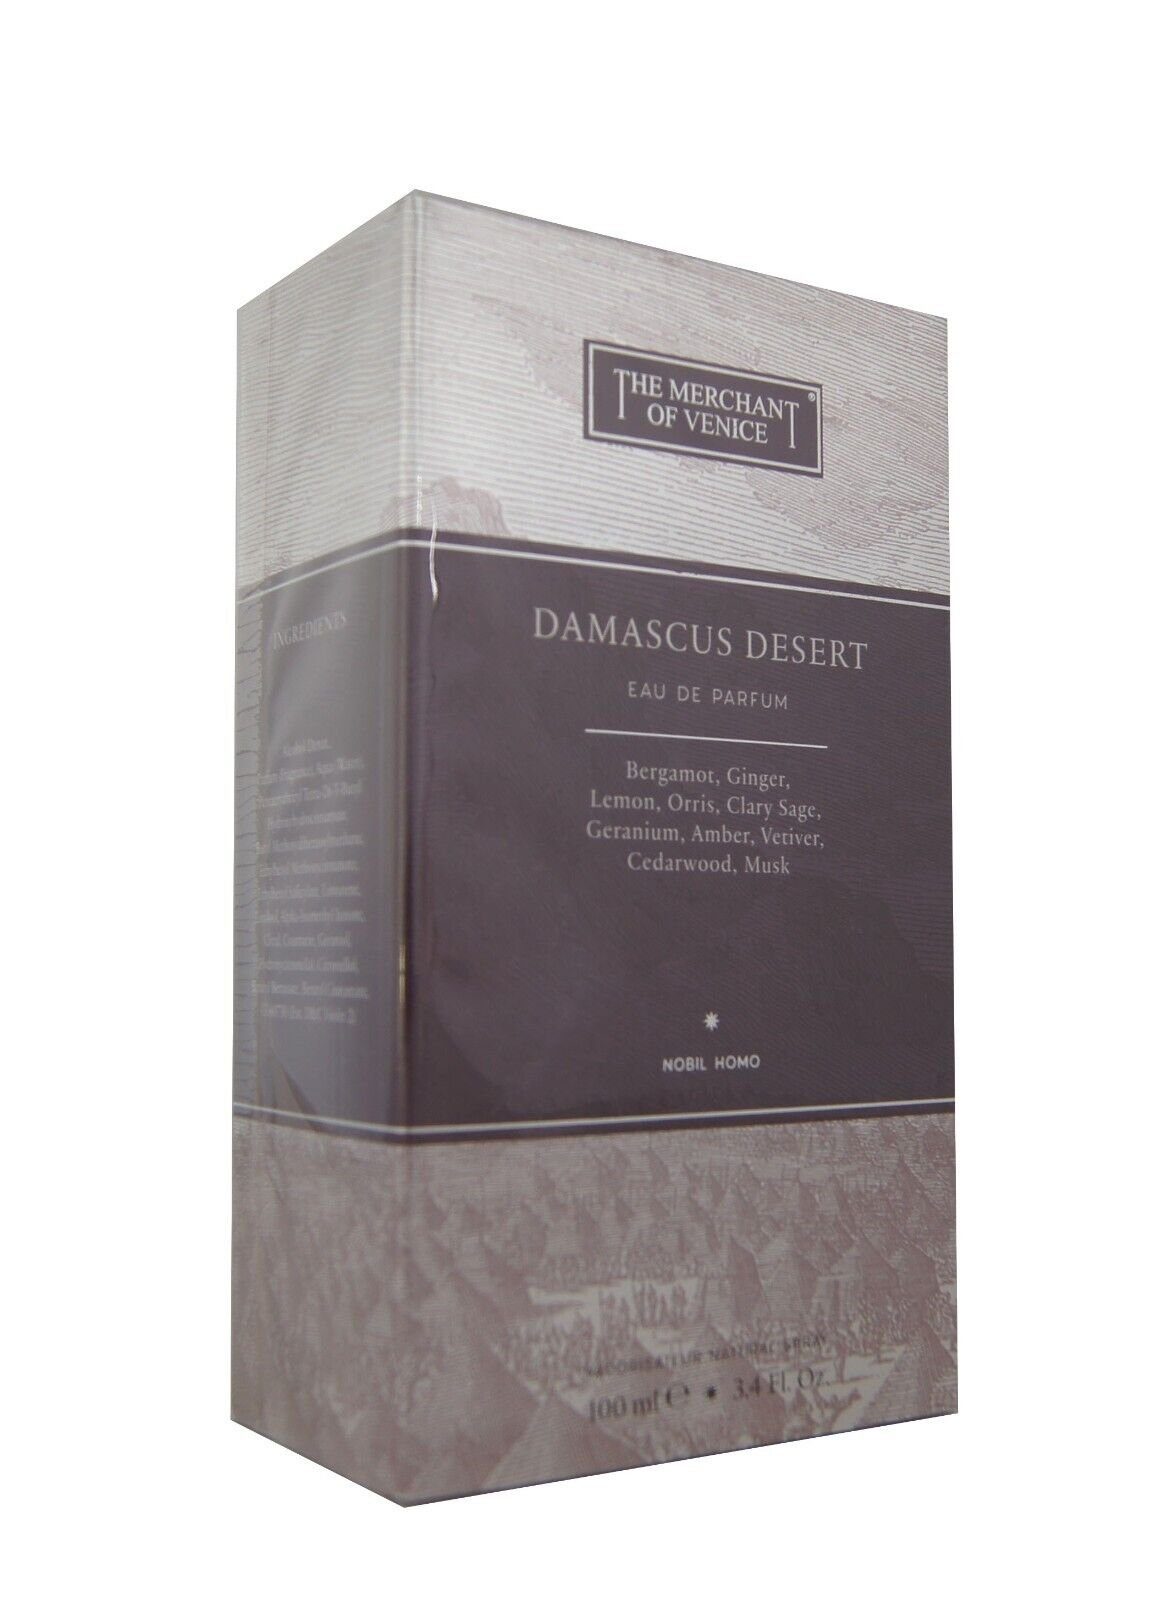 The Merchant Of Venice Eau Parfum Venice The de Damascus 100ml. Eau Desert edp Merchant Parfum de of